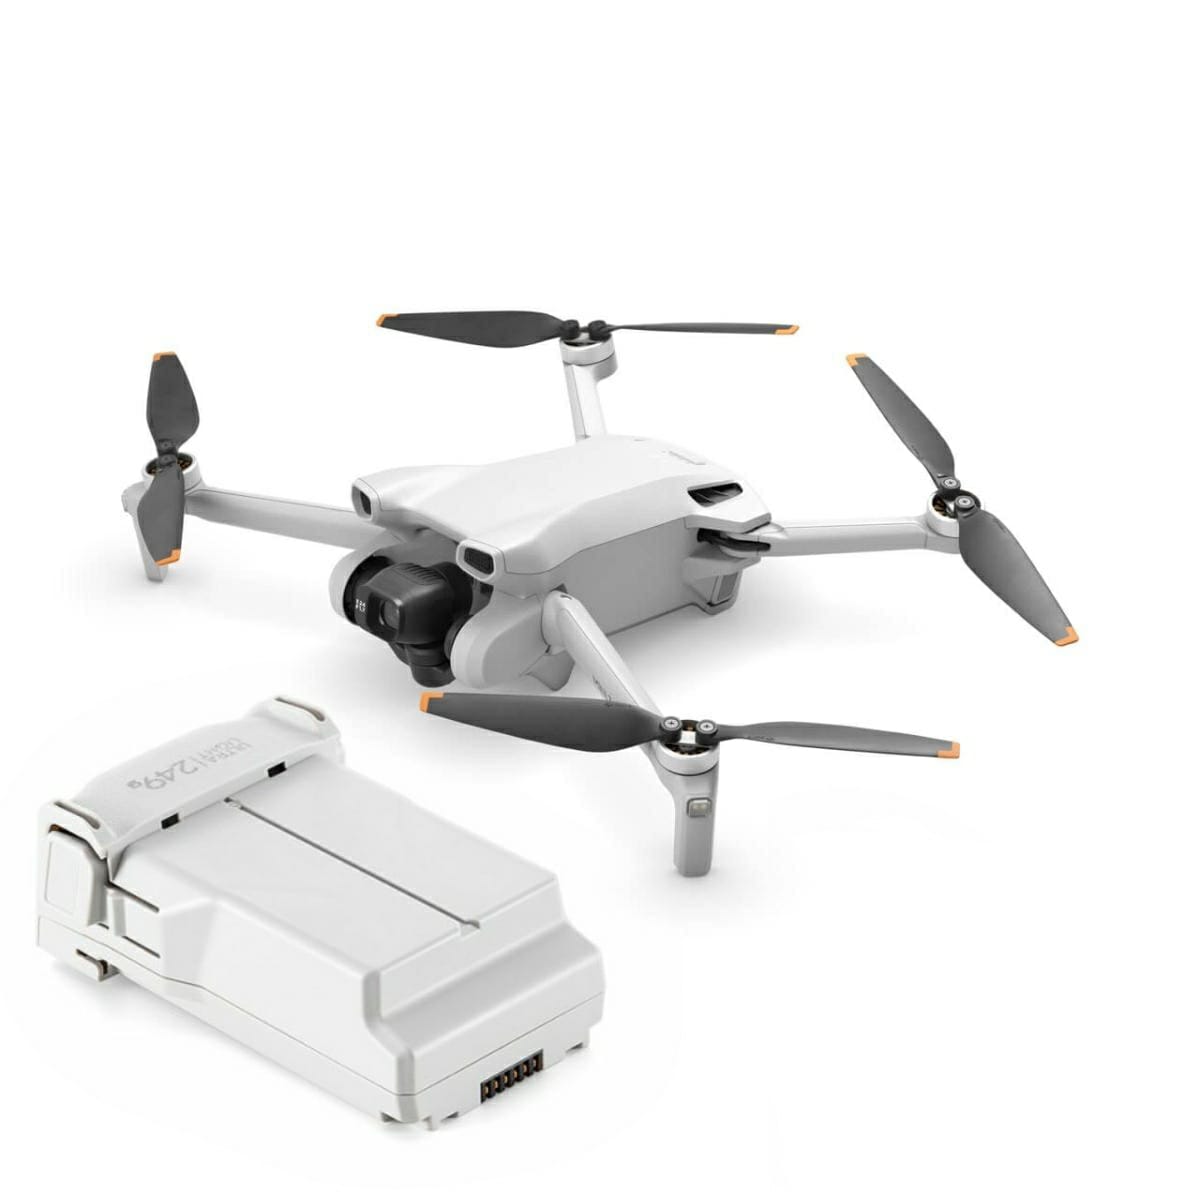 Dji Mini 3 Drone e batteria - Rivenditore Autorizzato Dji Roma - Negozio droni Roma